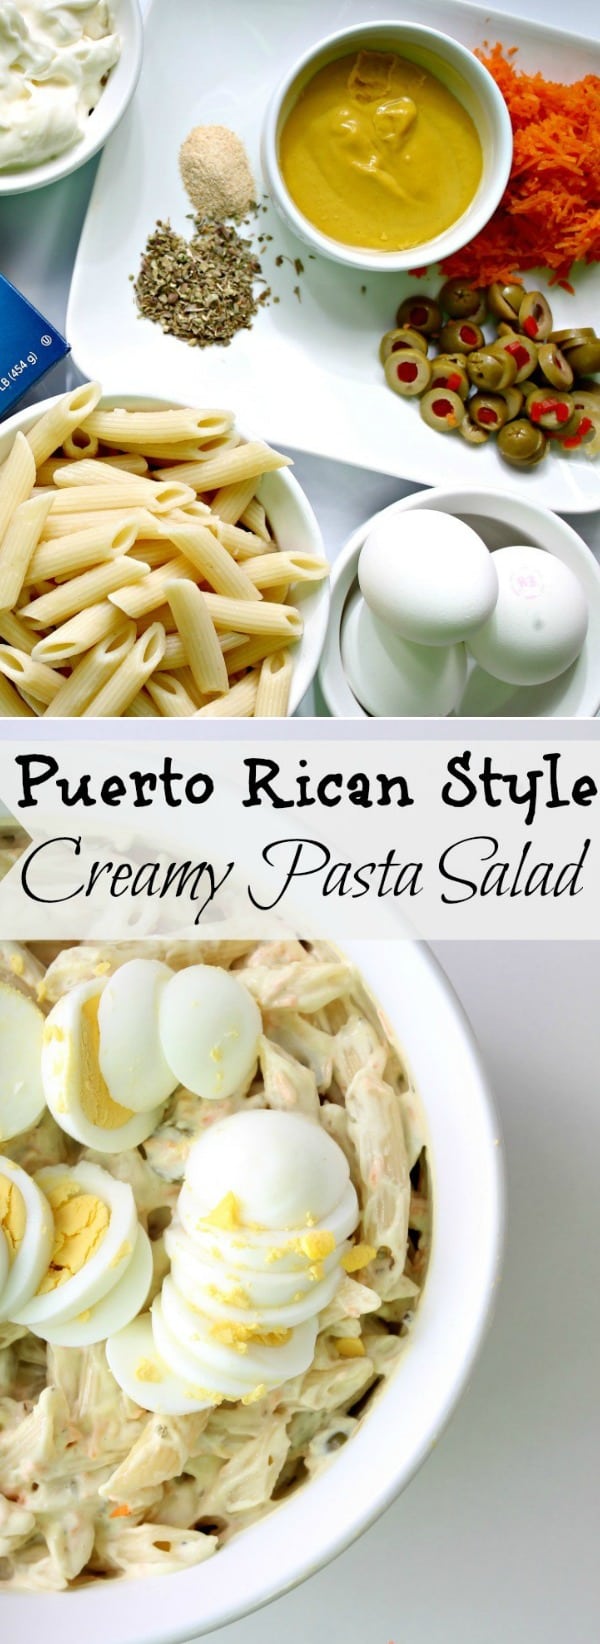 Puerto Rican Style Creamy Pasta Salad